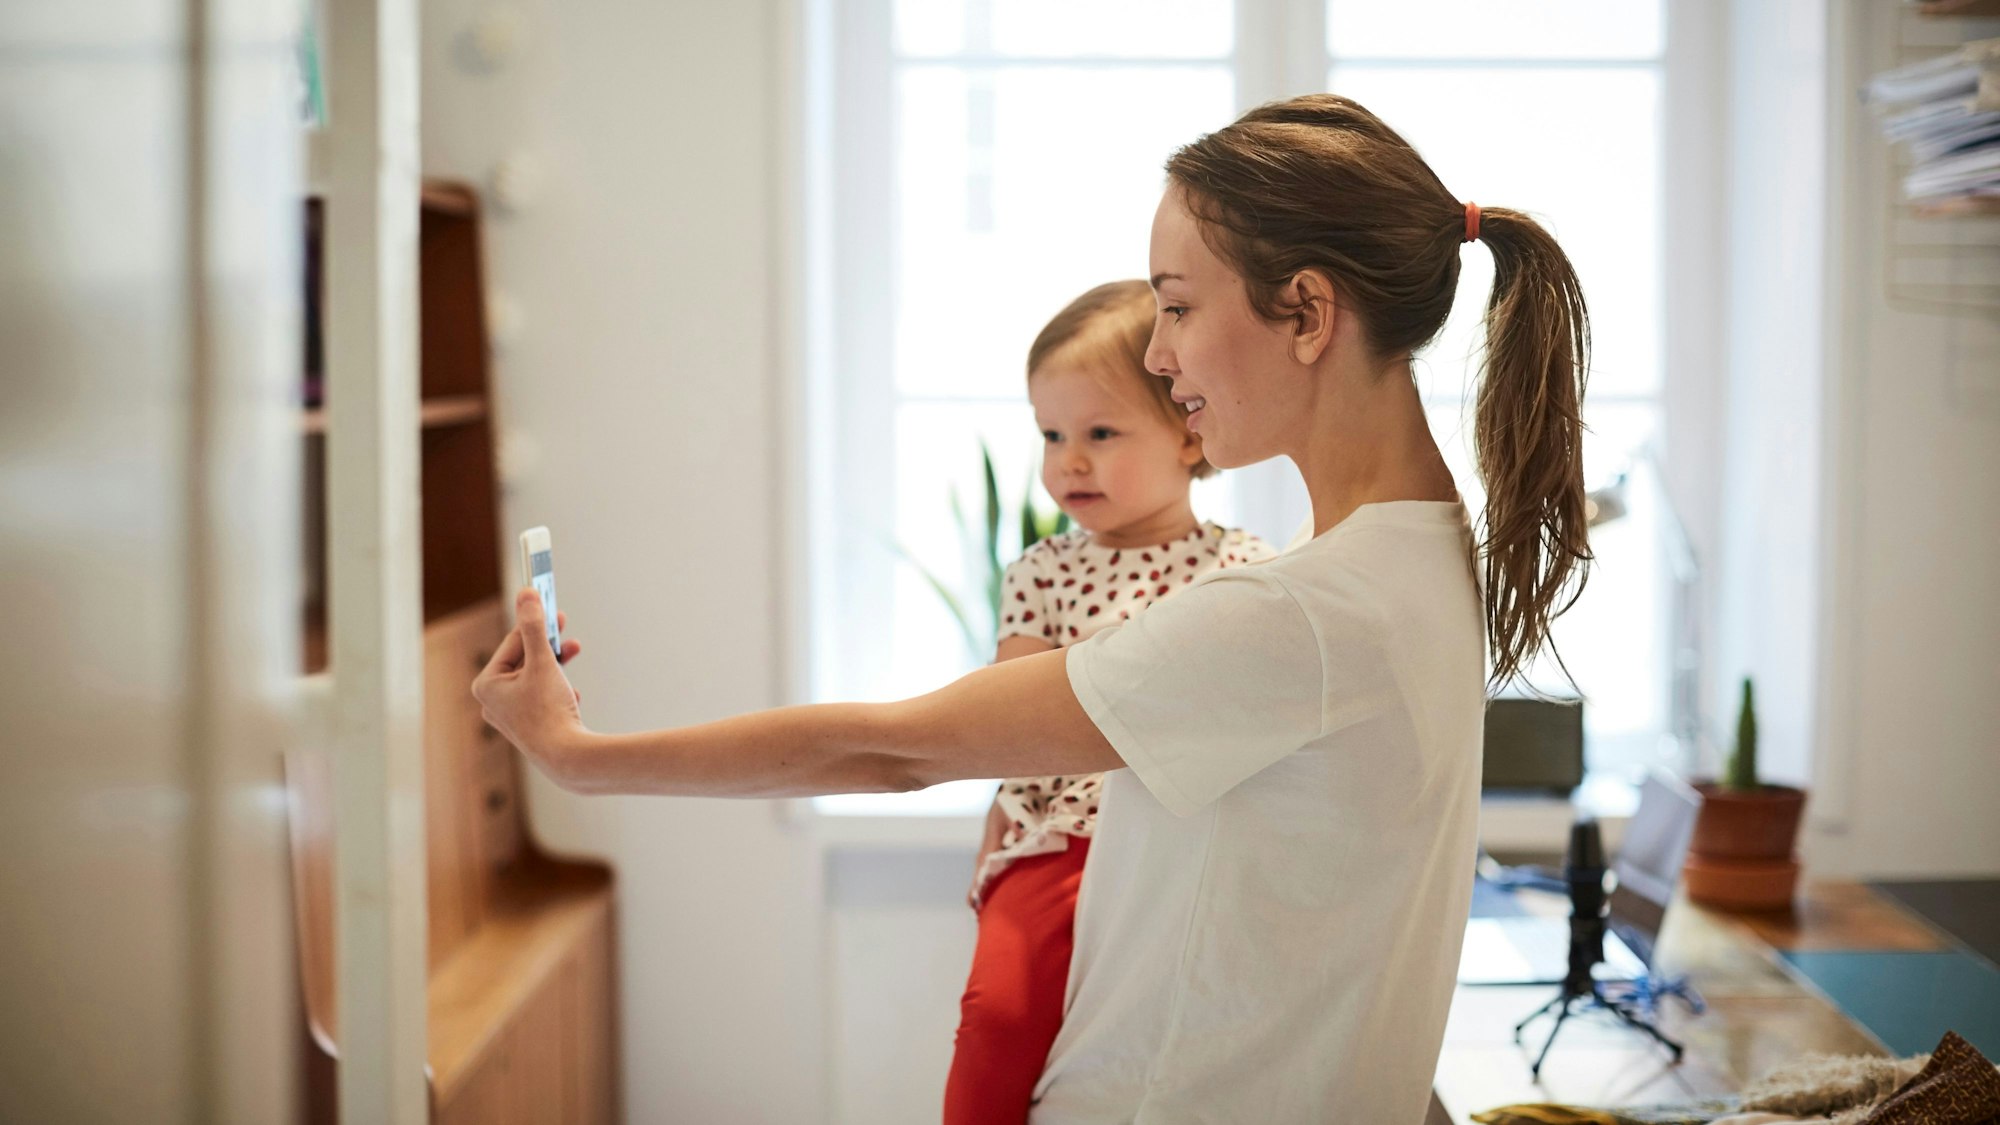 Influencerin nimmt ein Selfie mit ihrer Tochter auf Symbolbild.